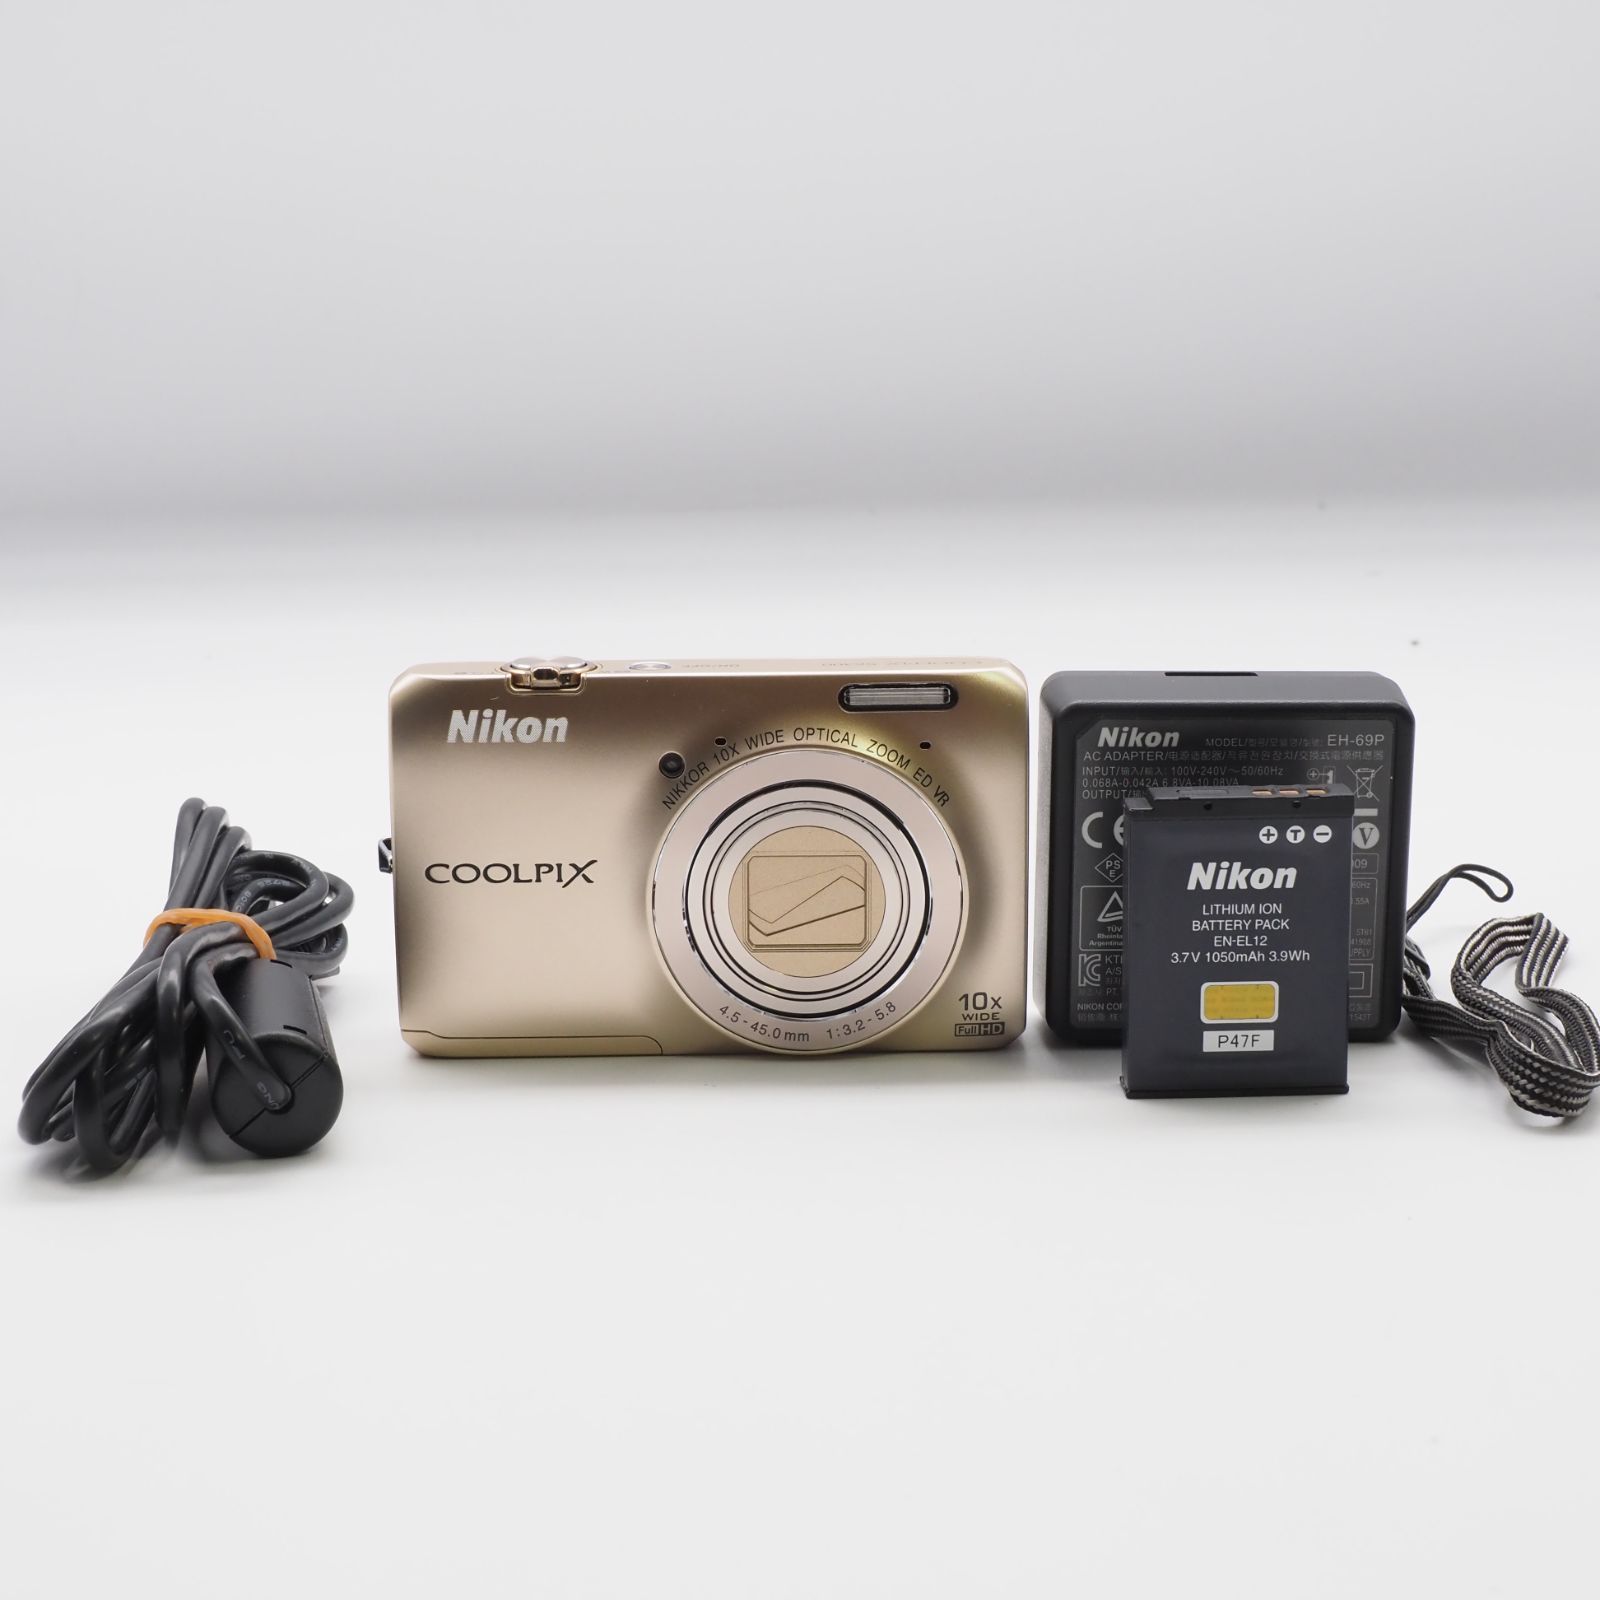 クールピクスS6300ゴールド - カメラ